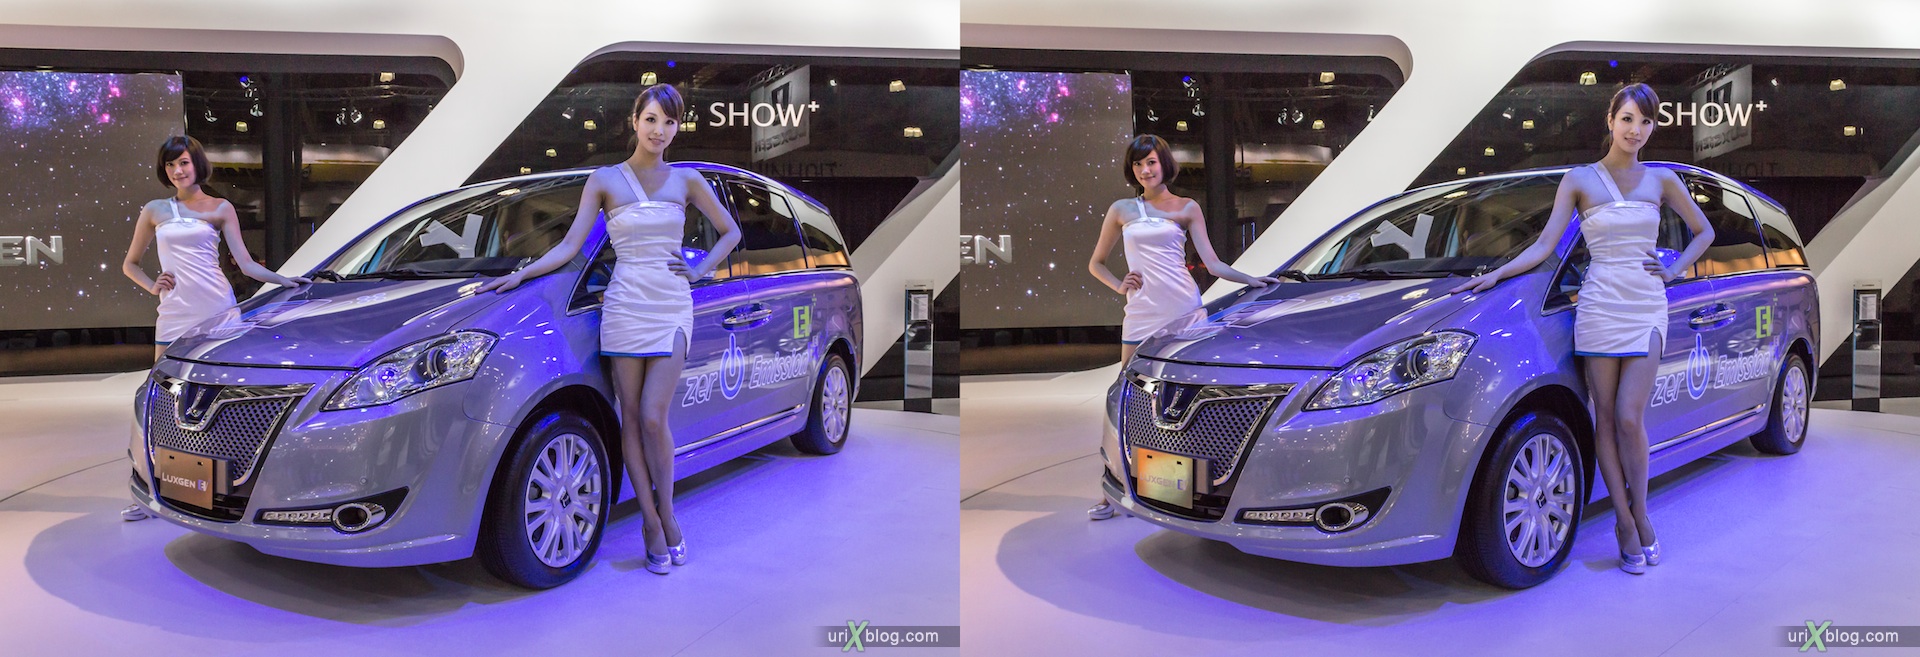 2012, Luxgen E, девушка, модель, Московский международный автомобильный салон, ММАС, Крокус Экспо, 3D, стерео, стереопара